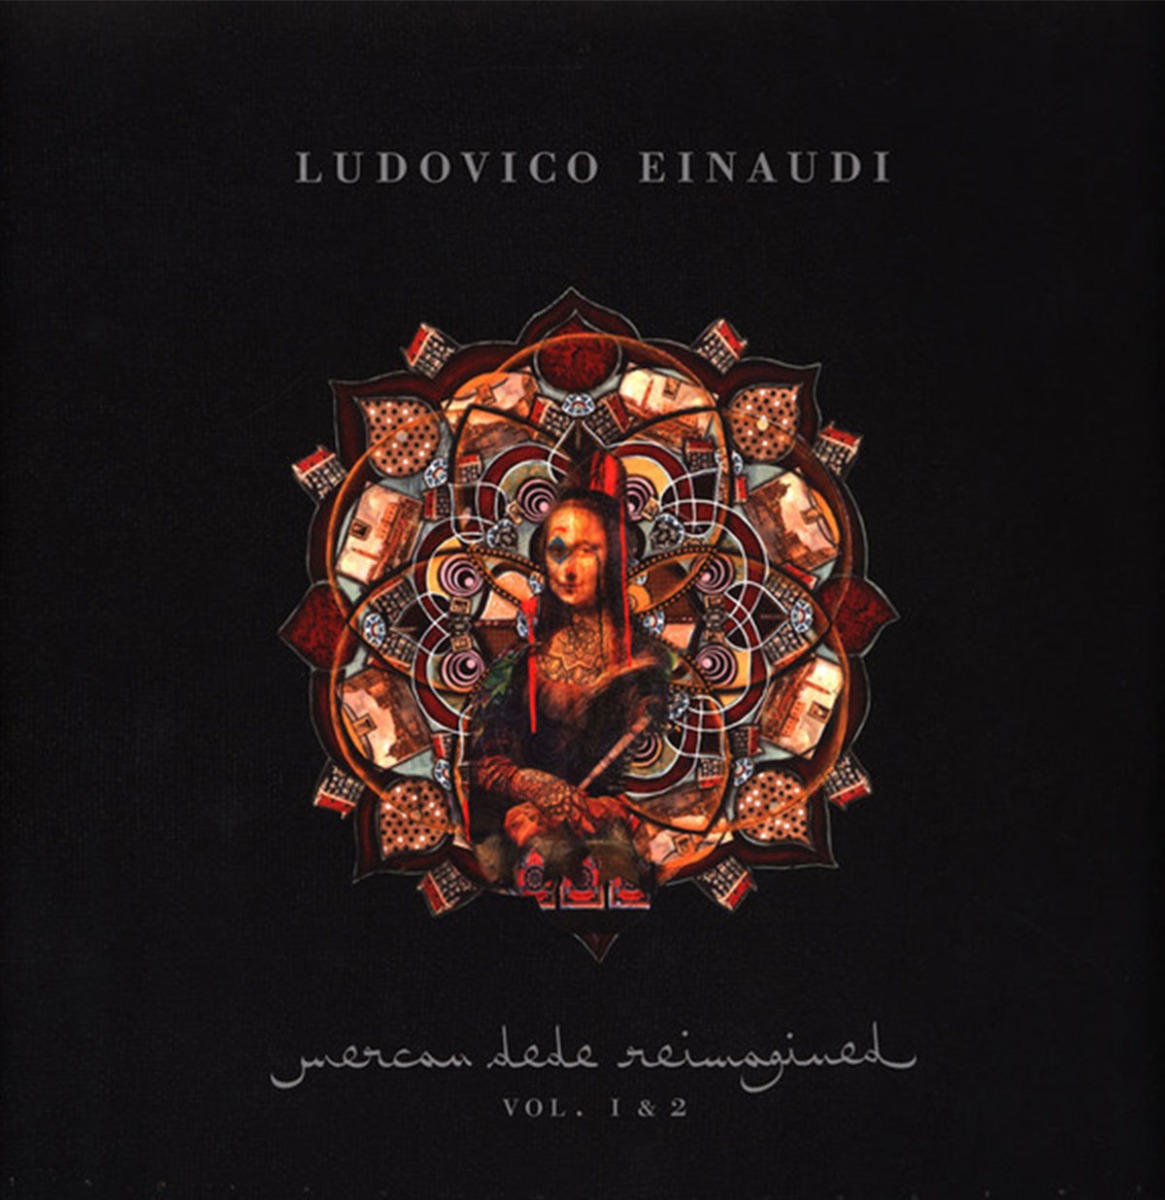 Ludovico Einaudi - Reimagined Vol. 1 & 2 2LP